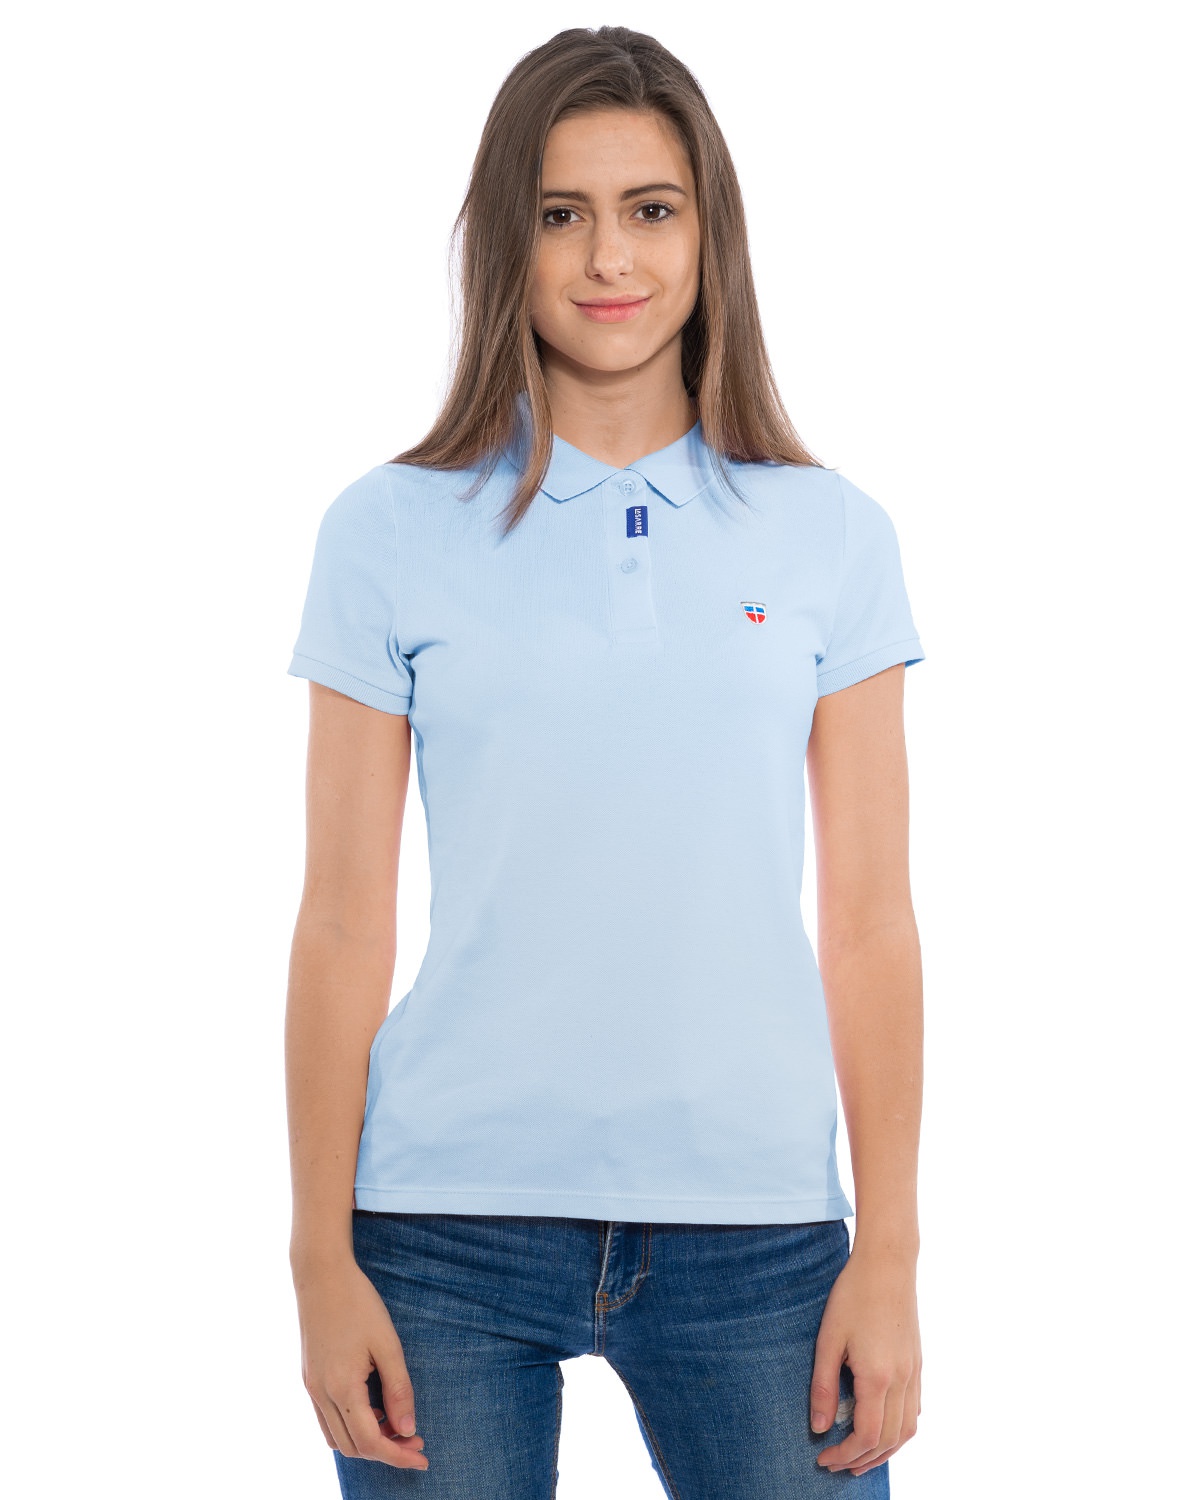 Junge Frau im LA SARRE Ladies-Polo-Shirt. Frontal-Ansicht des Kleidungs-Stücks der Saarland Marke im Farbton Azure mit blauem LA SARRE Saumlabel an der Knopfleiste und dem Sarre-Wappen als Stickerei auf der Brust.